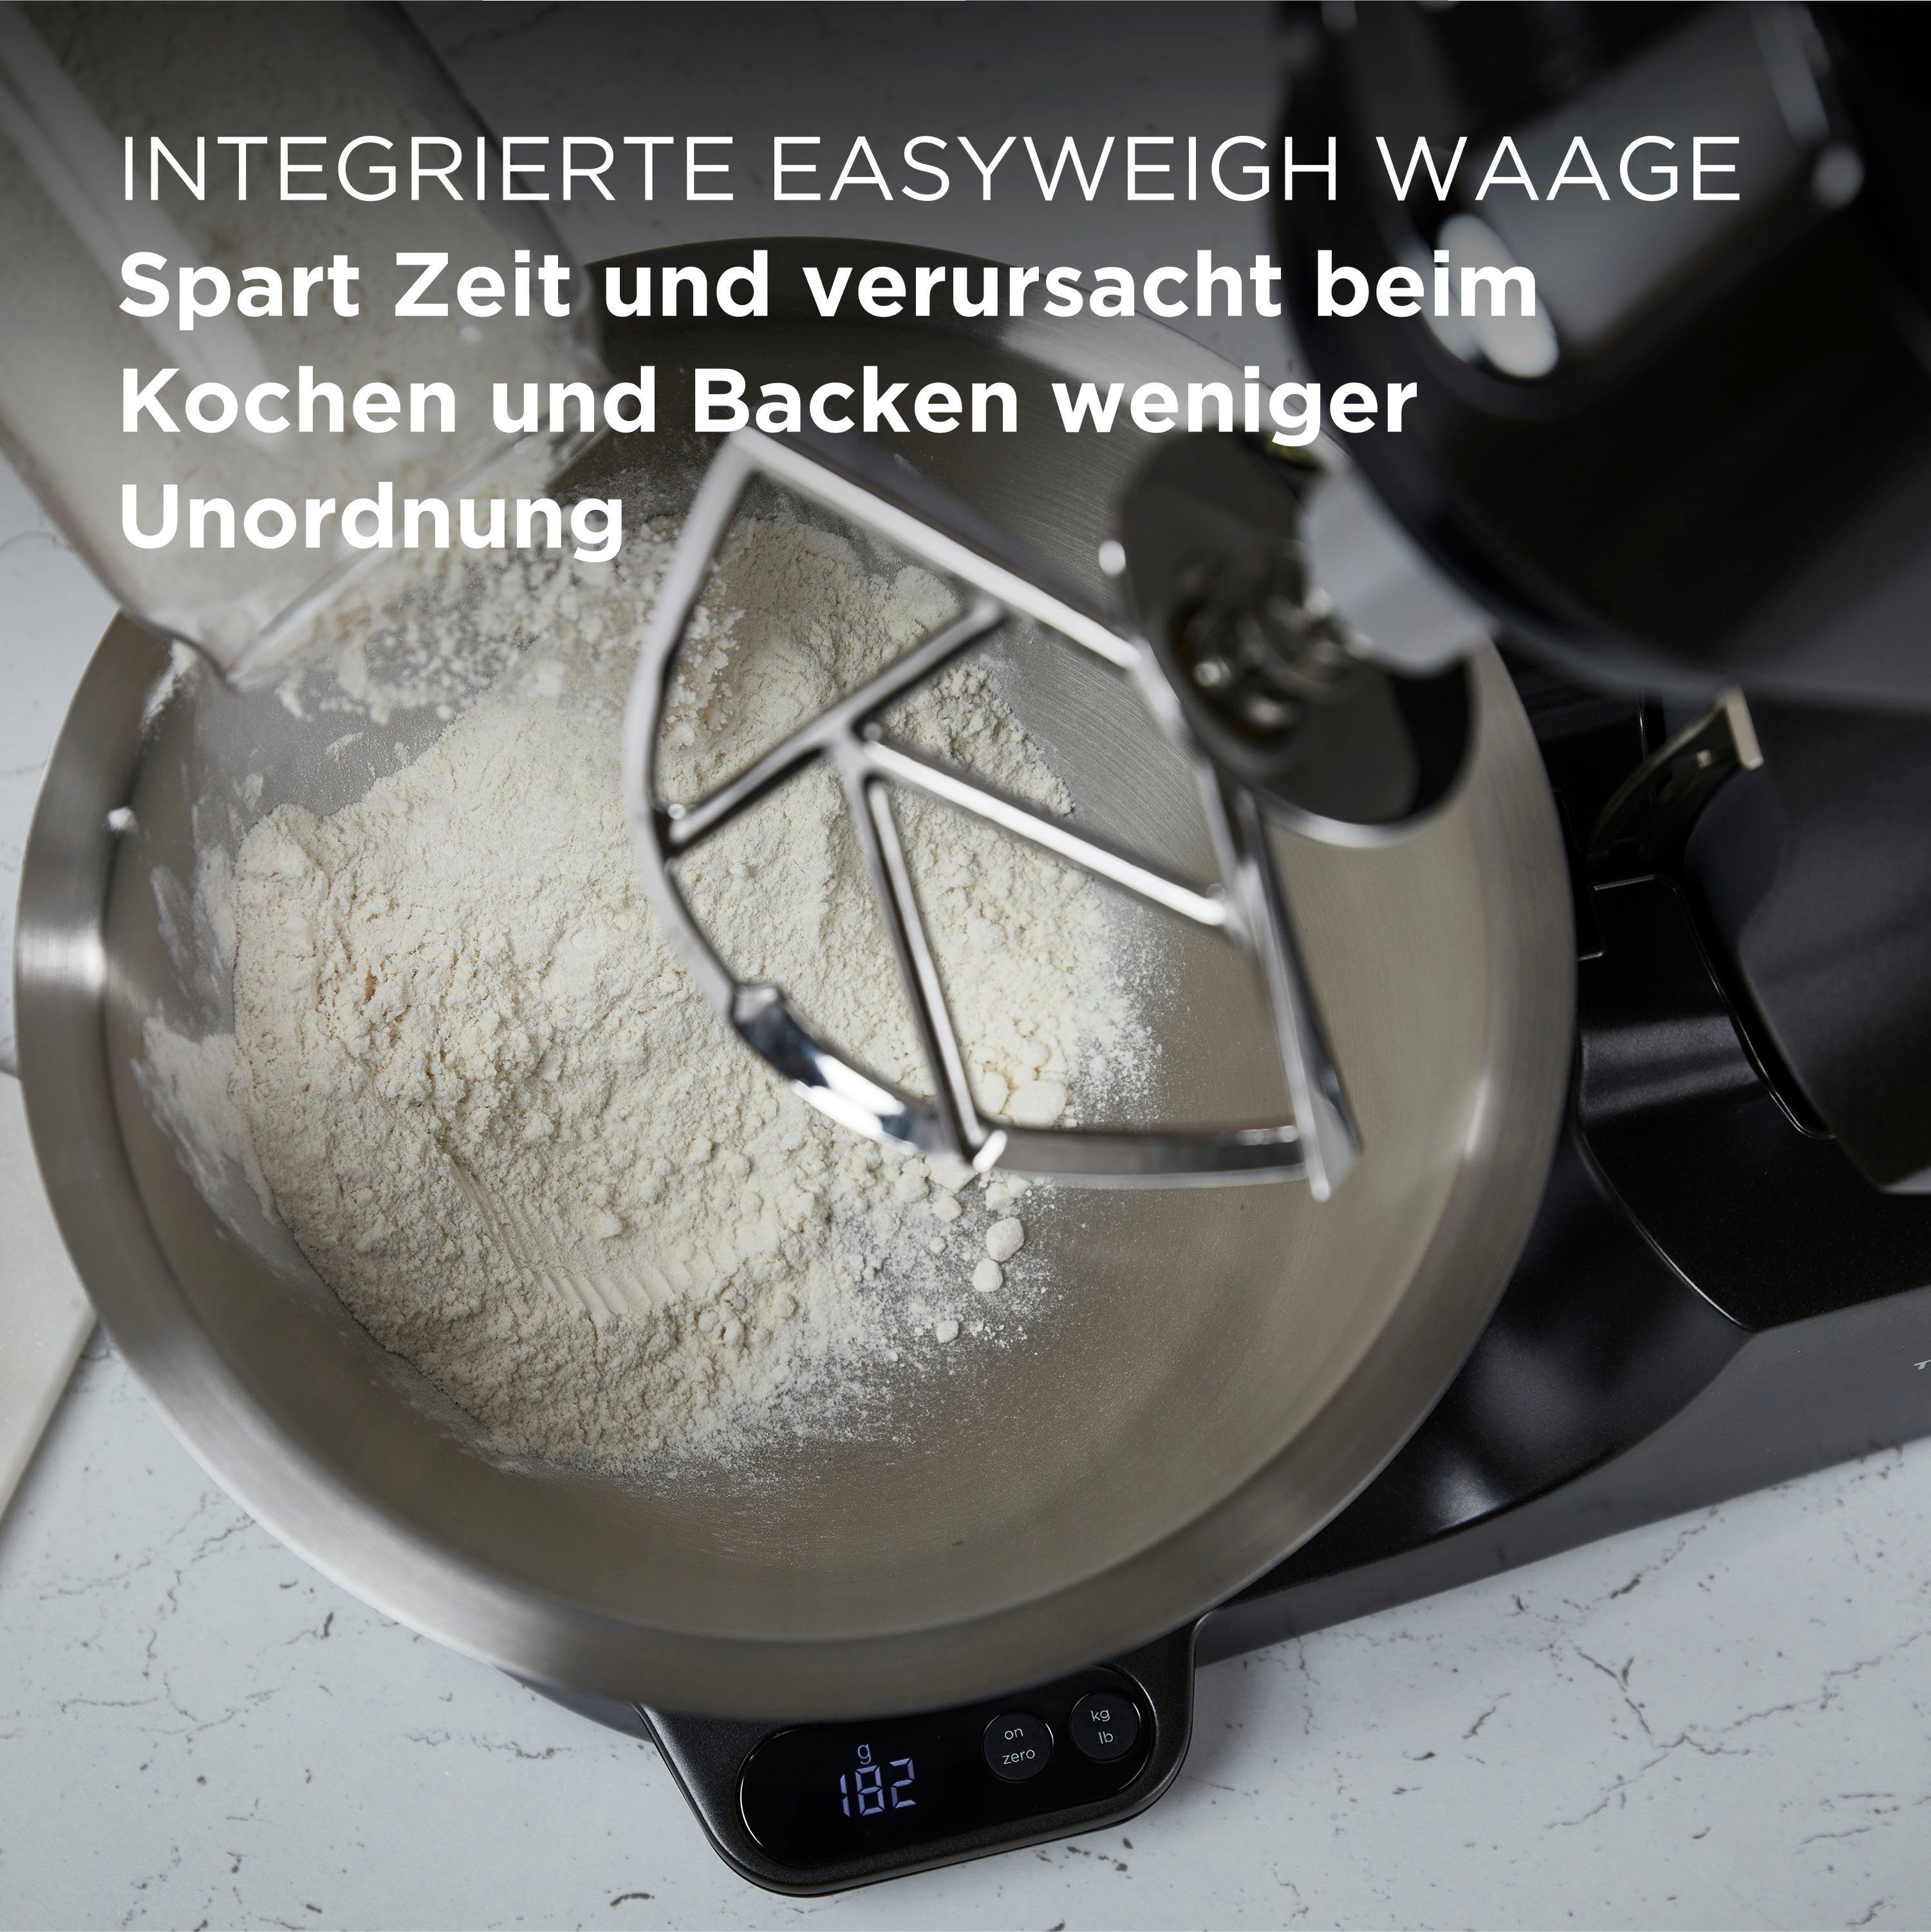 KENWOOD Küchenmaschine Titanium Chef Baker 5 Gratis W, UVP 1200 Gratis Schnitzelwerk + KVC85.004BK, Wert: Mixaufsatz Schüssel, Zubehör, 319,- l